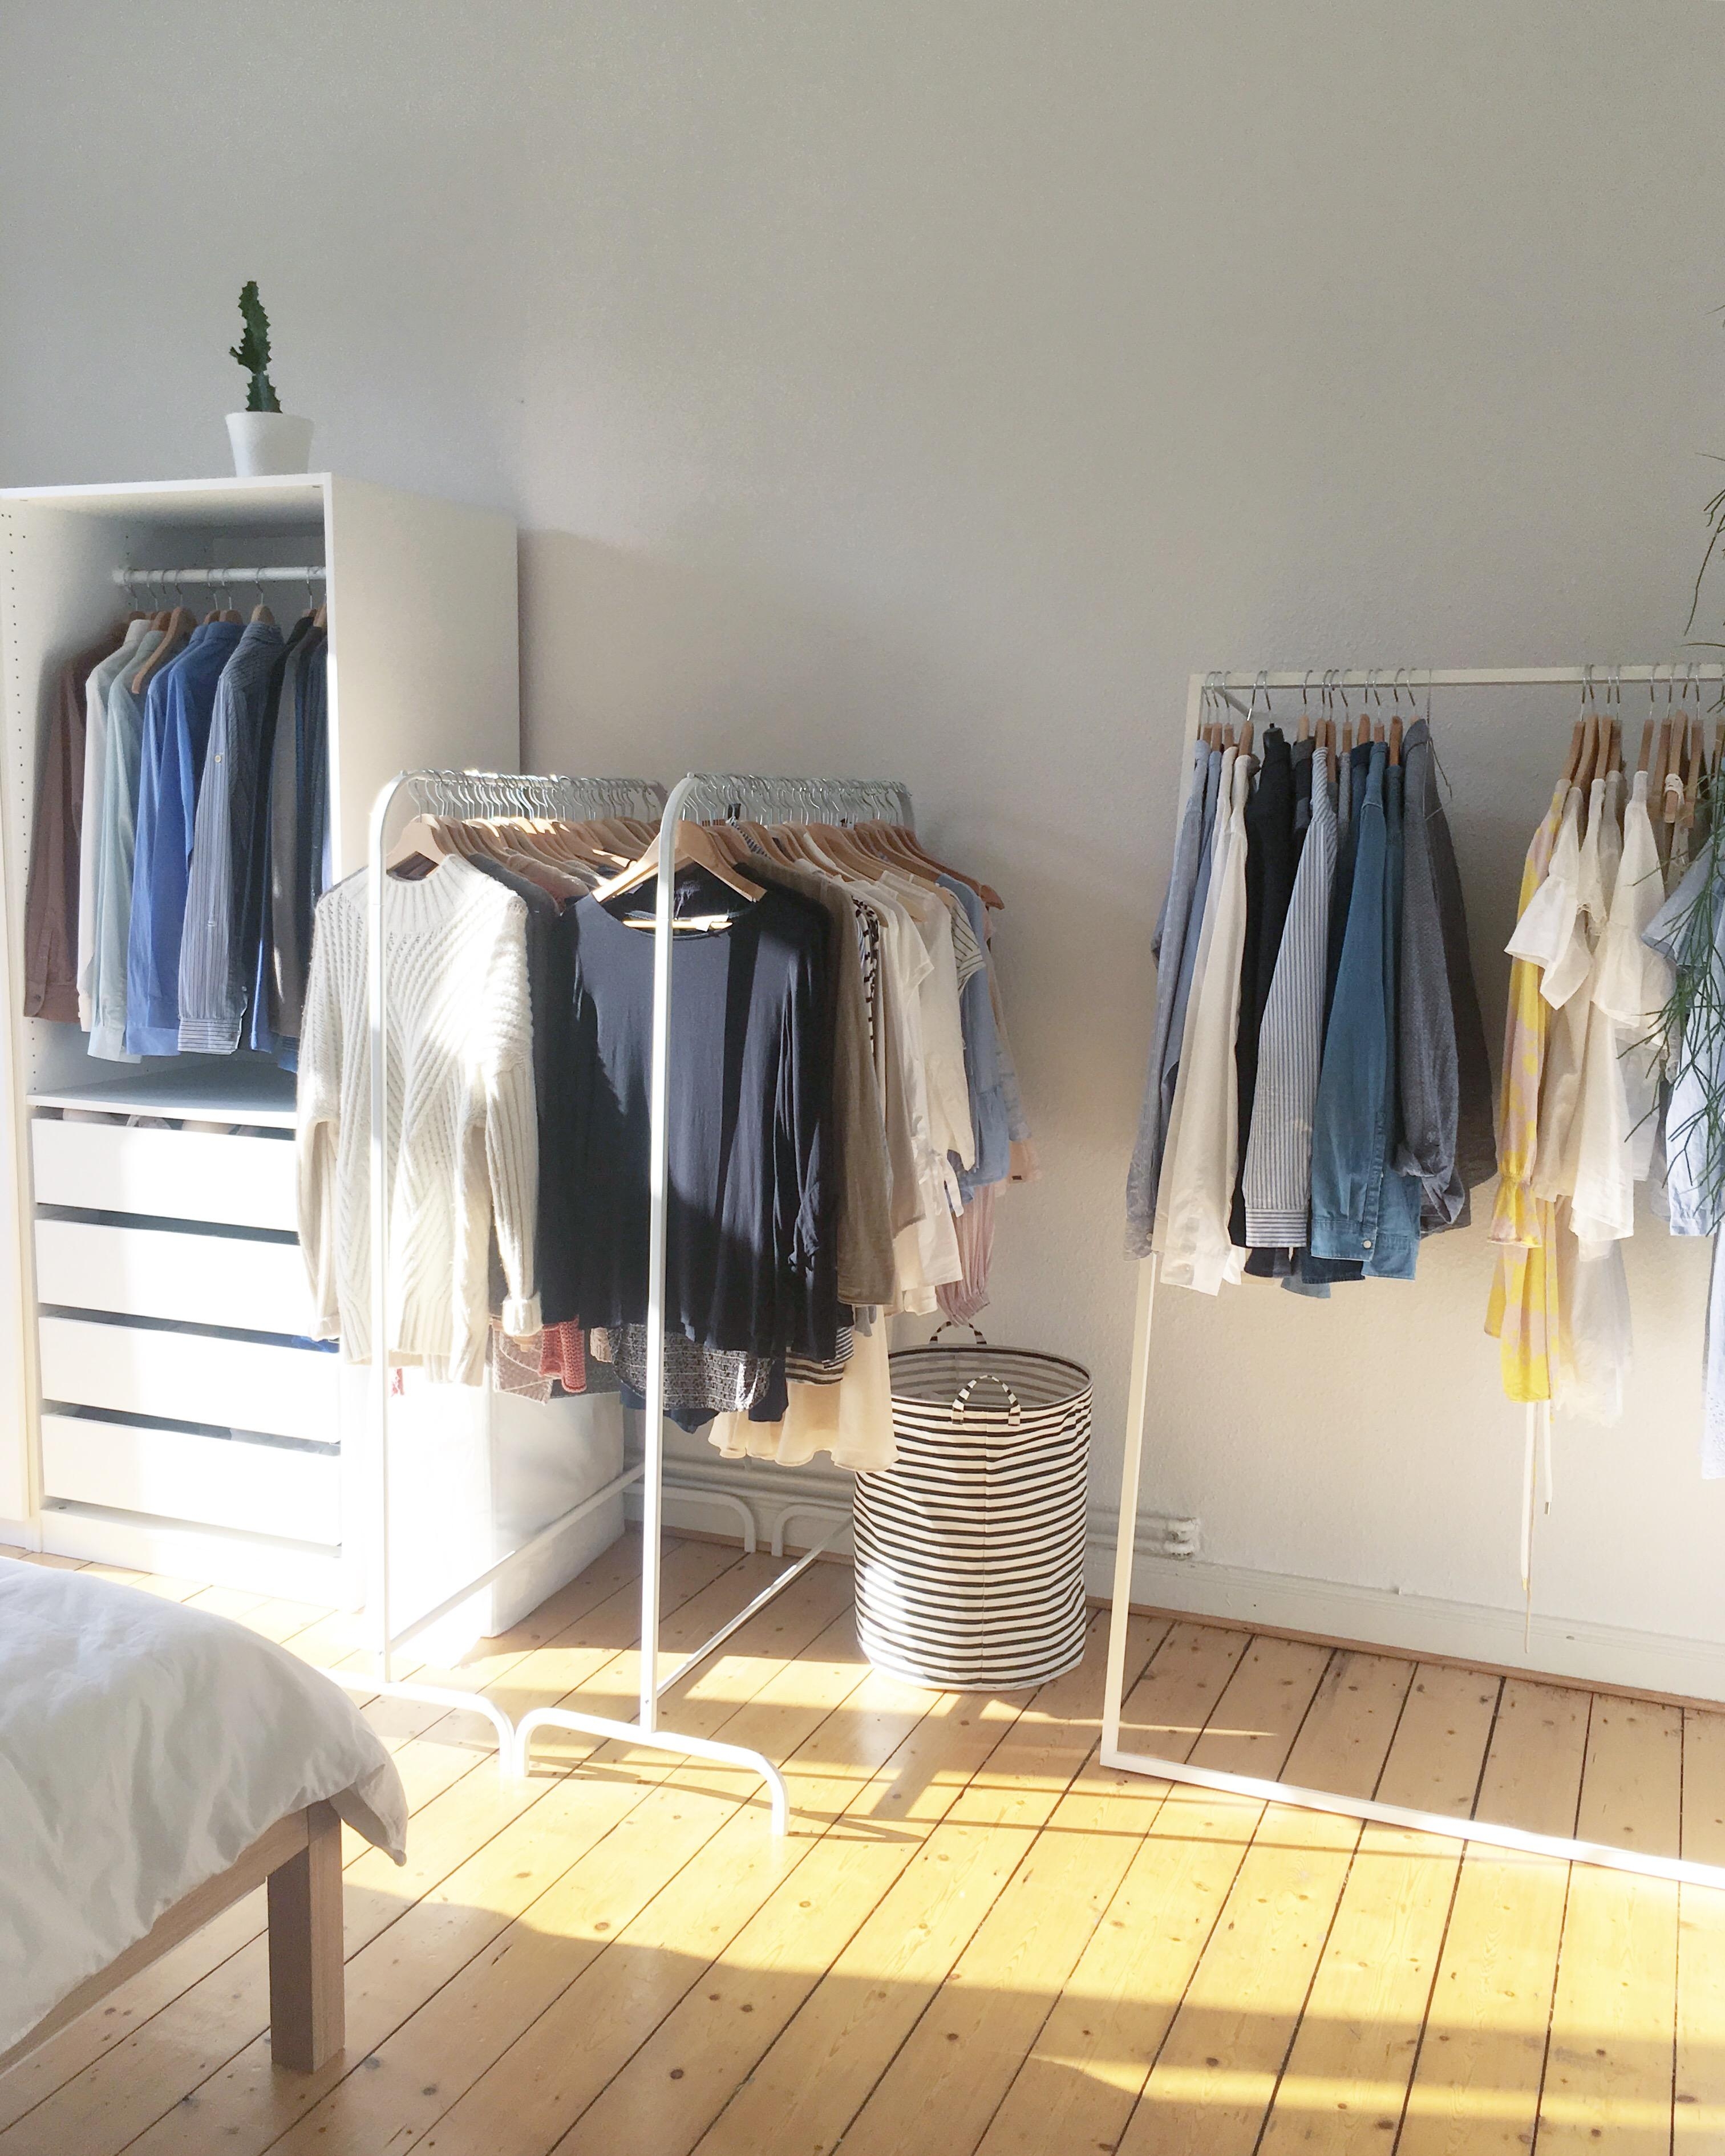 Heute gibt es einmal einen Einblick in unseren „Kleiderschrank“. 
#kleiderschrank #closet #kleiderstange